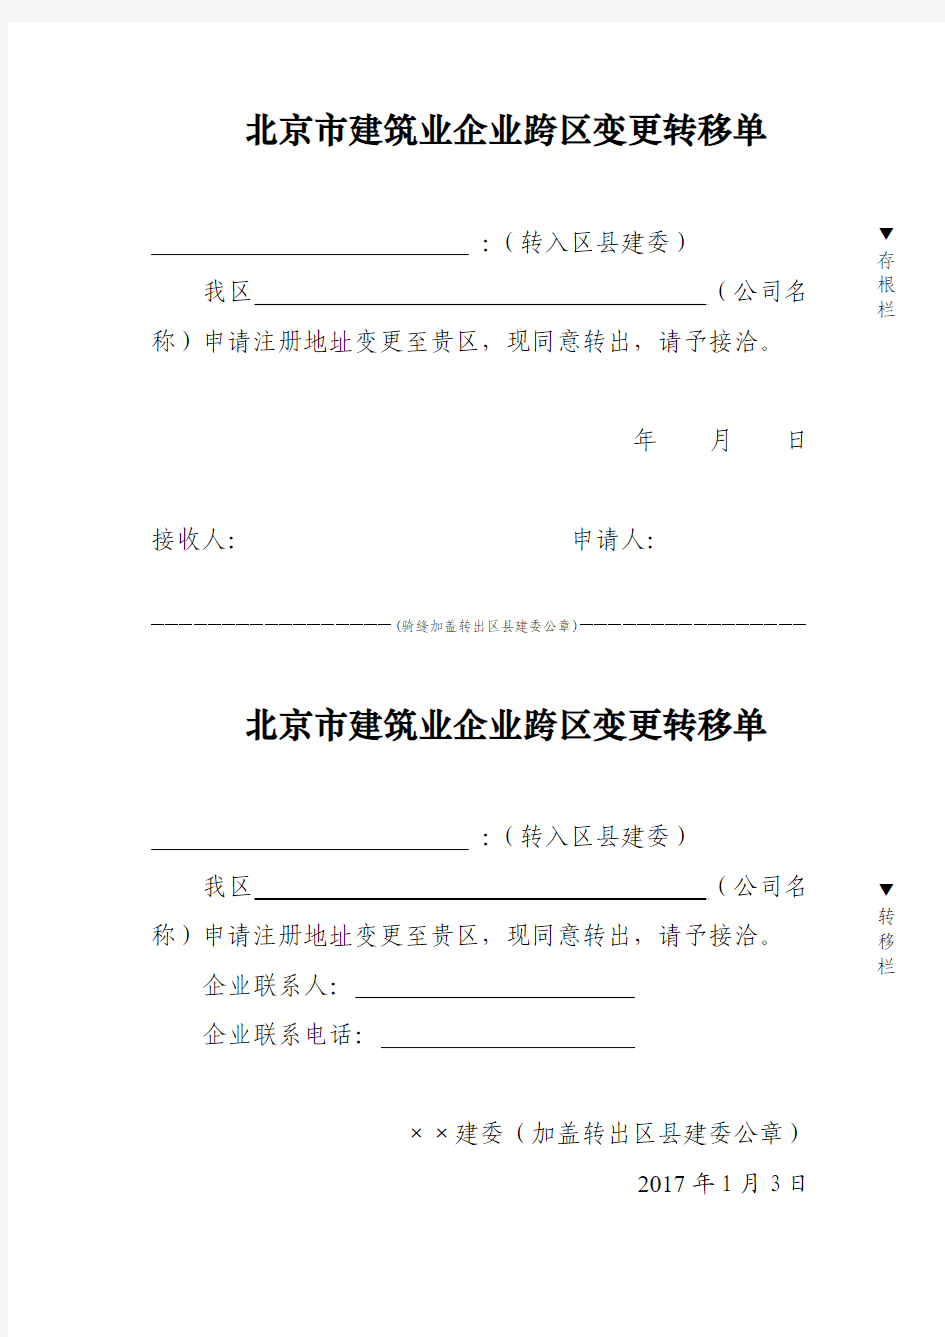 北京市建筑业企业注册地址跨区变更单